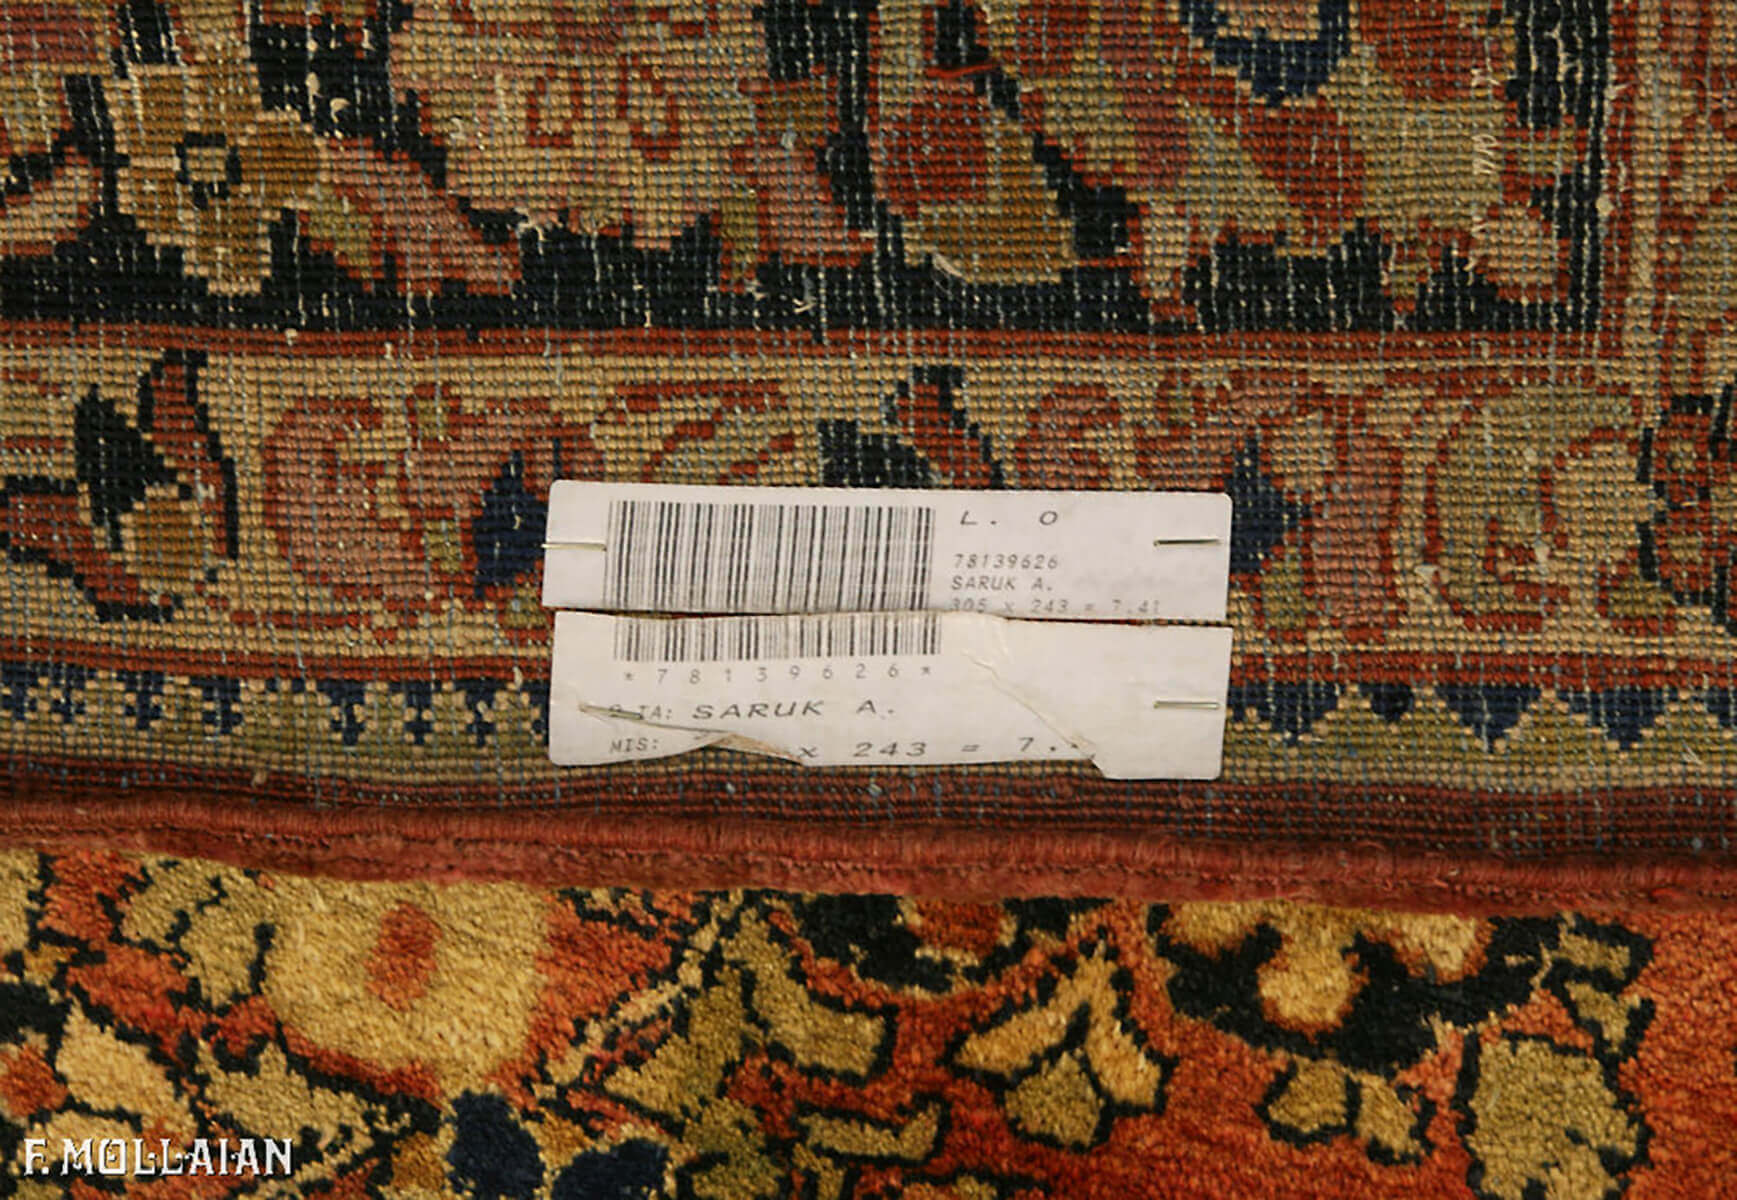 Antique Persian Saruk Carpet n°:78139626